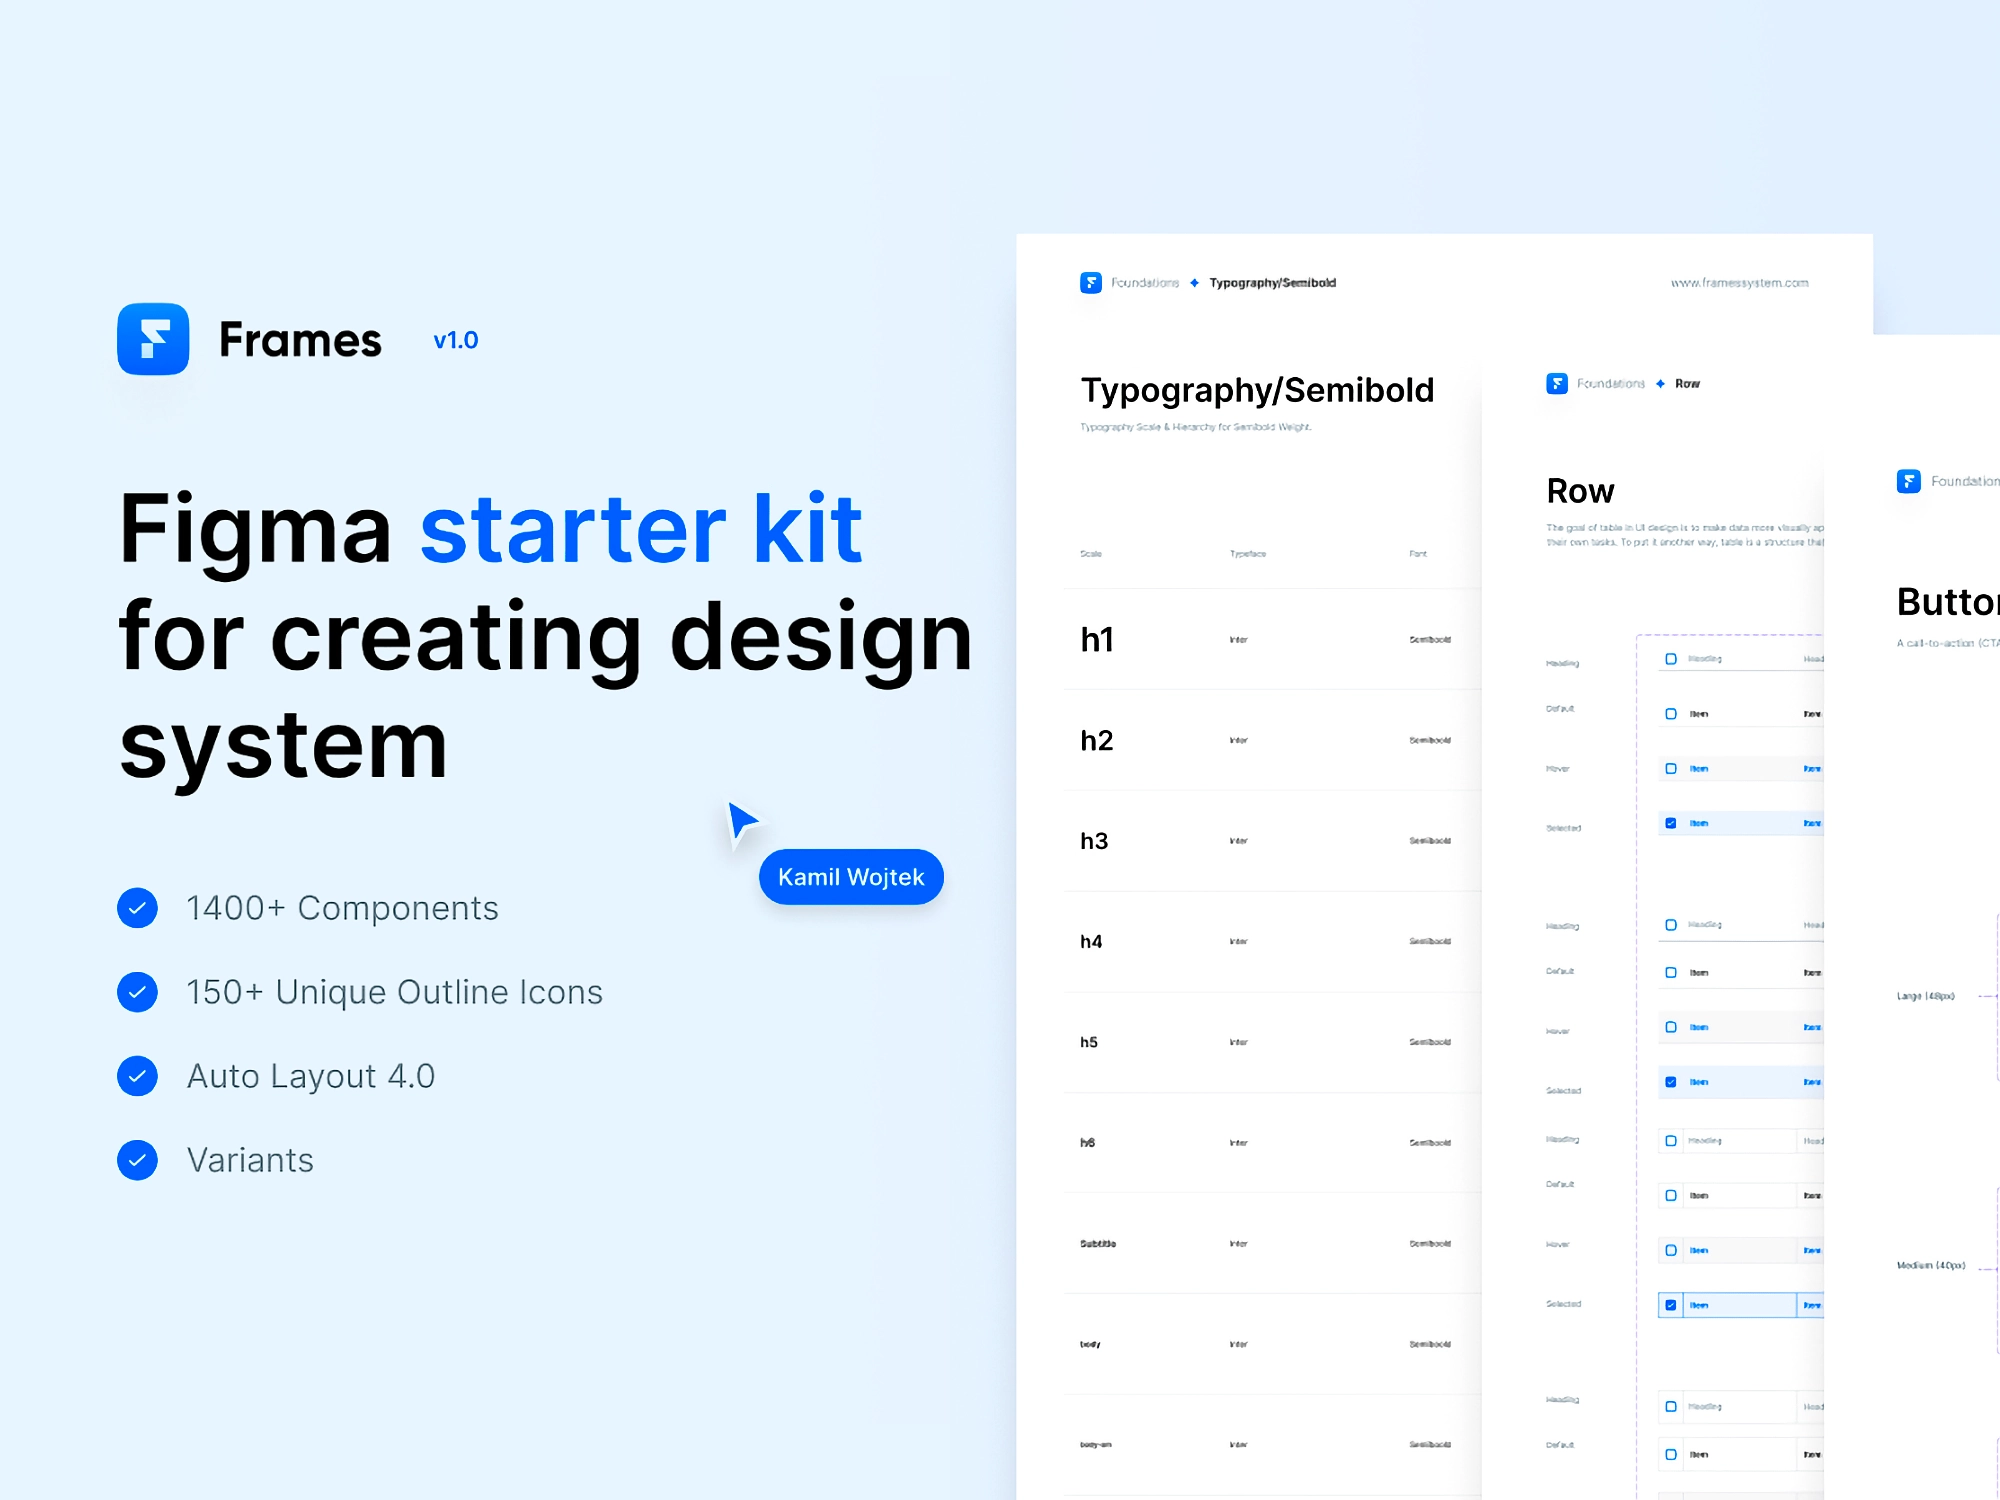 [$] Frames System: Figma Starter kit for creating design system